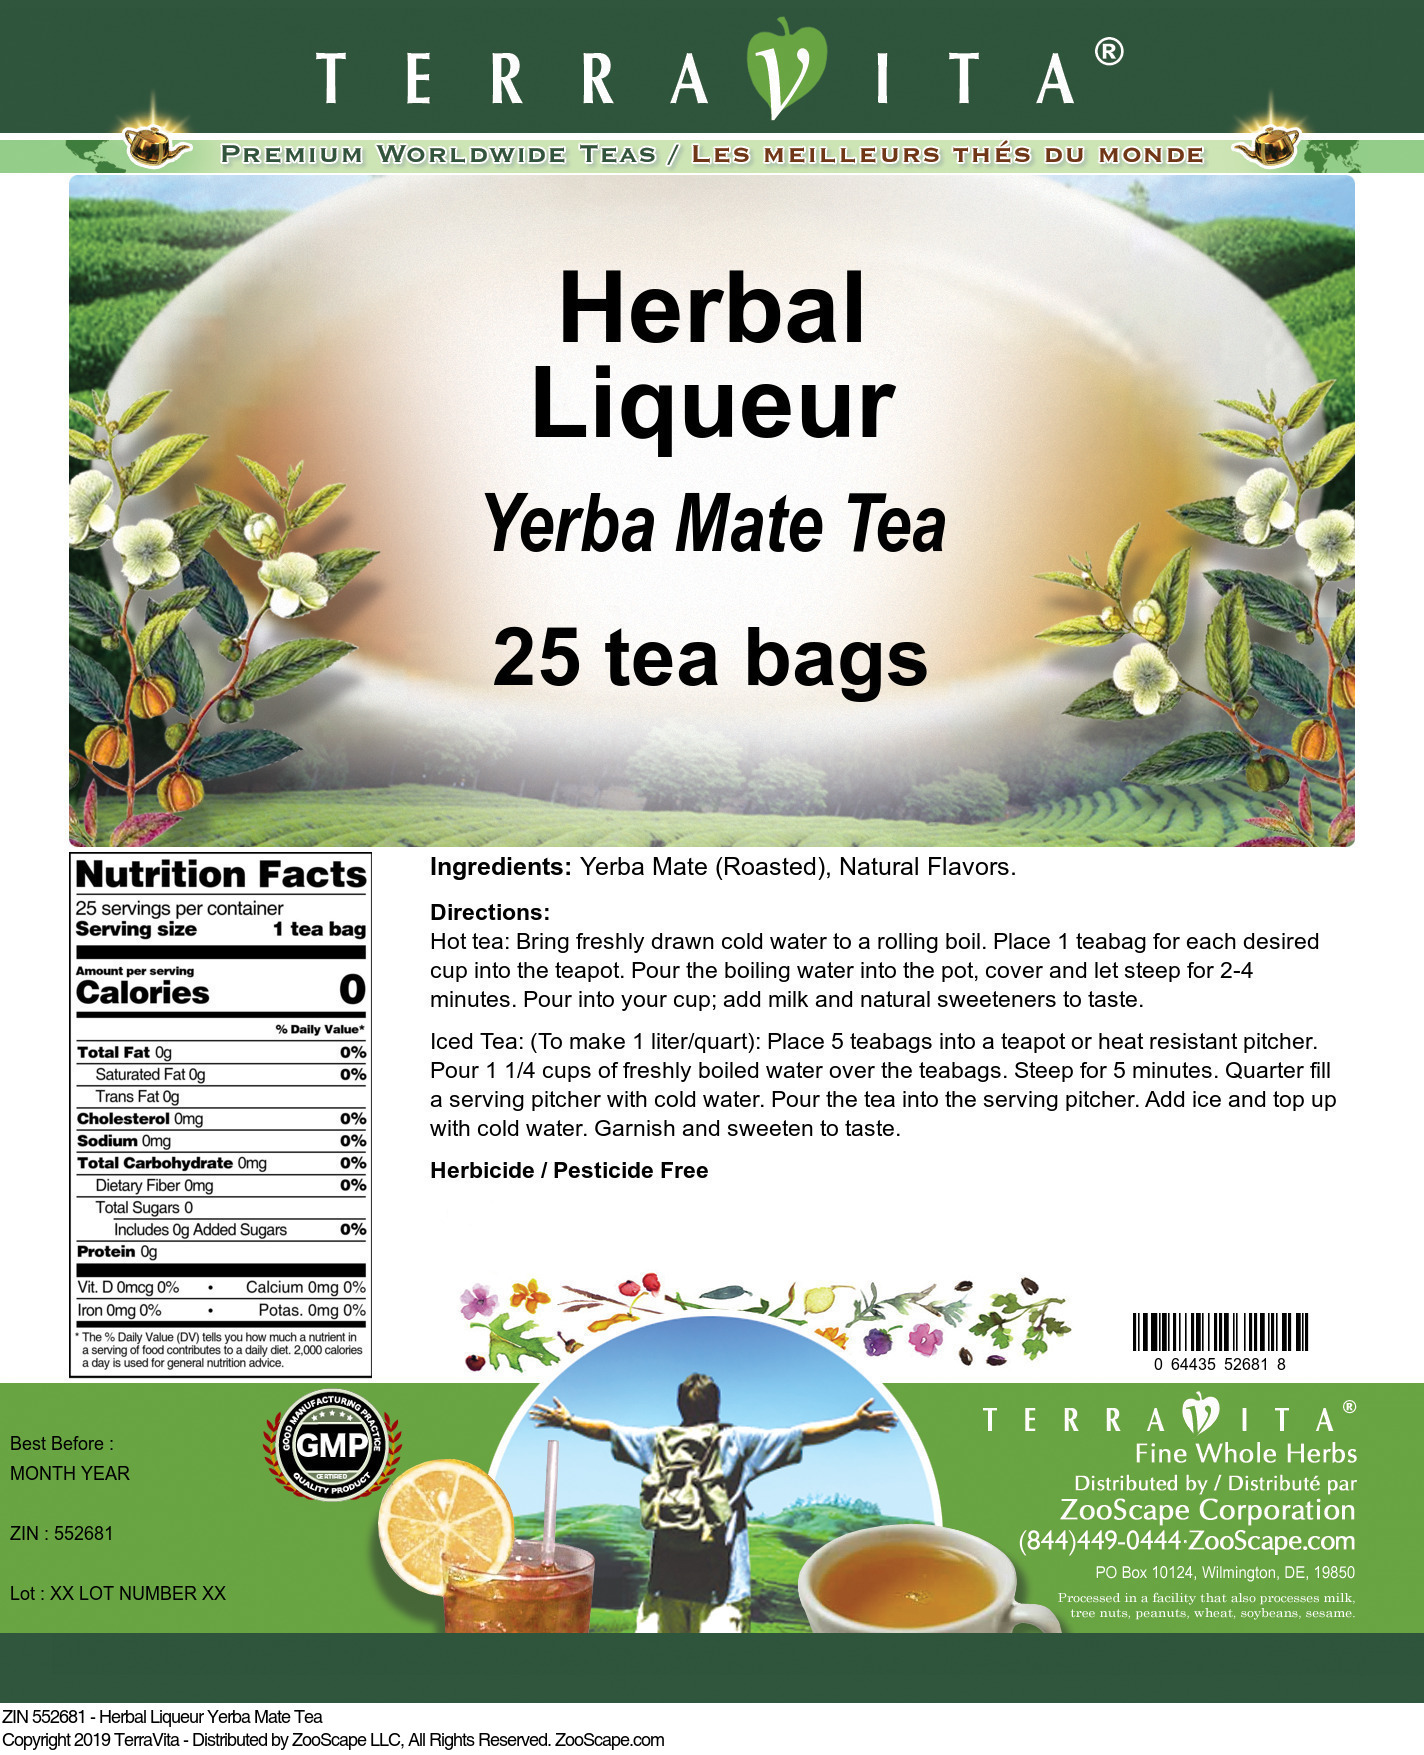 Herbal Liqueur Yerba Mate Tea - Label